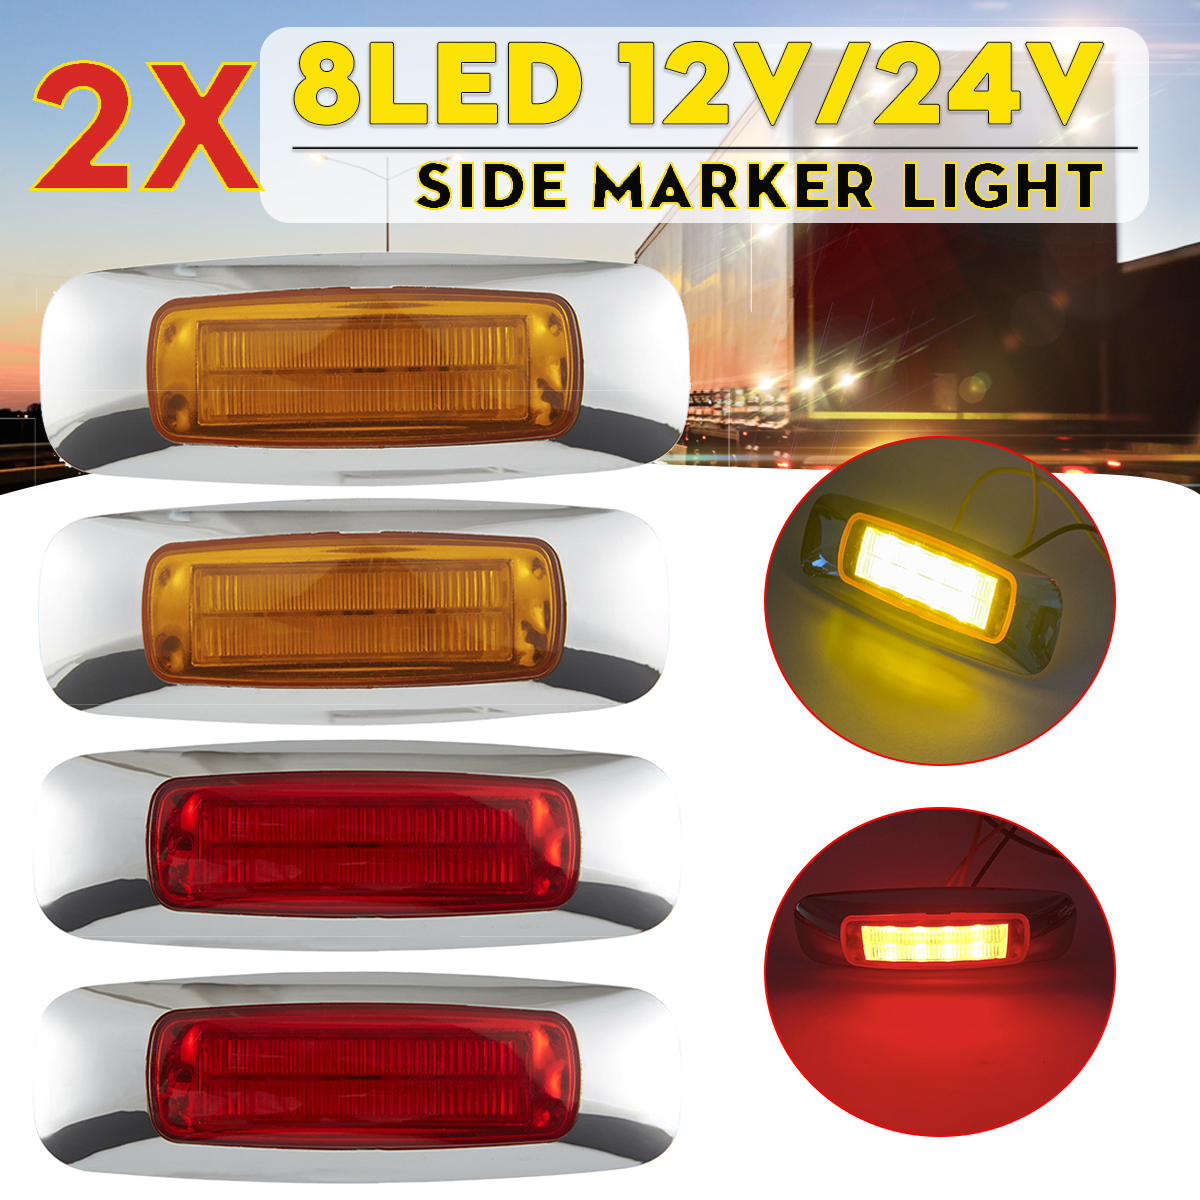 2X 8LED 12V/24V Waterproof Side Marker Lights Taillights For Truck Pickup